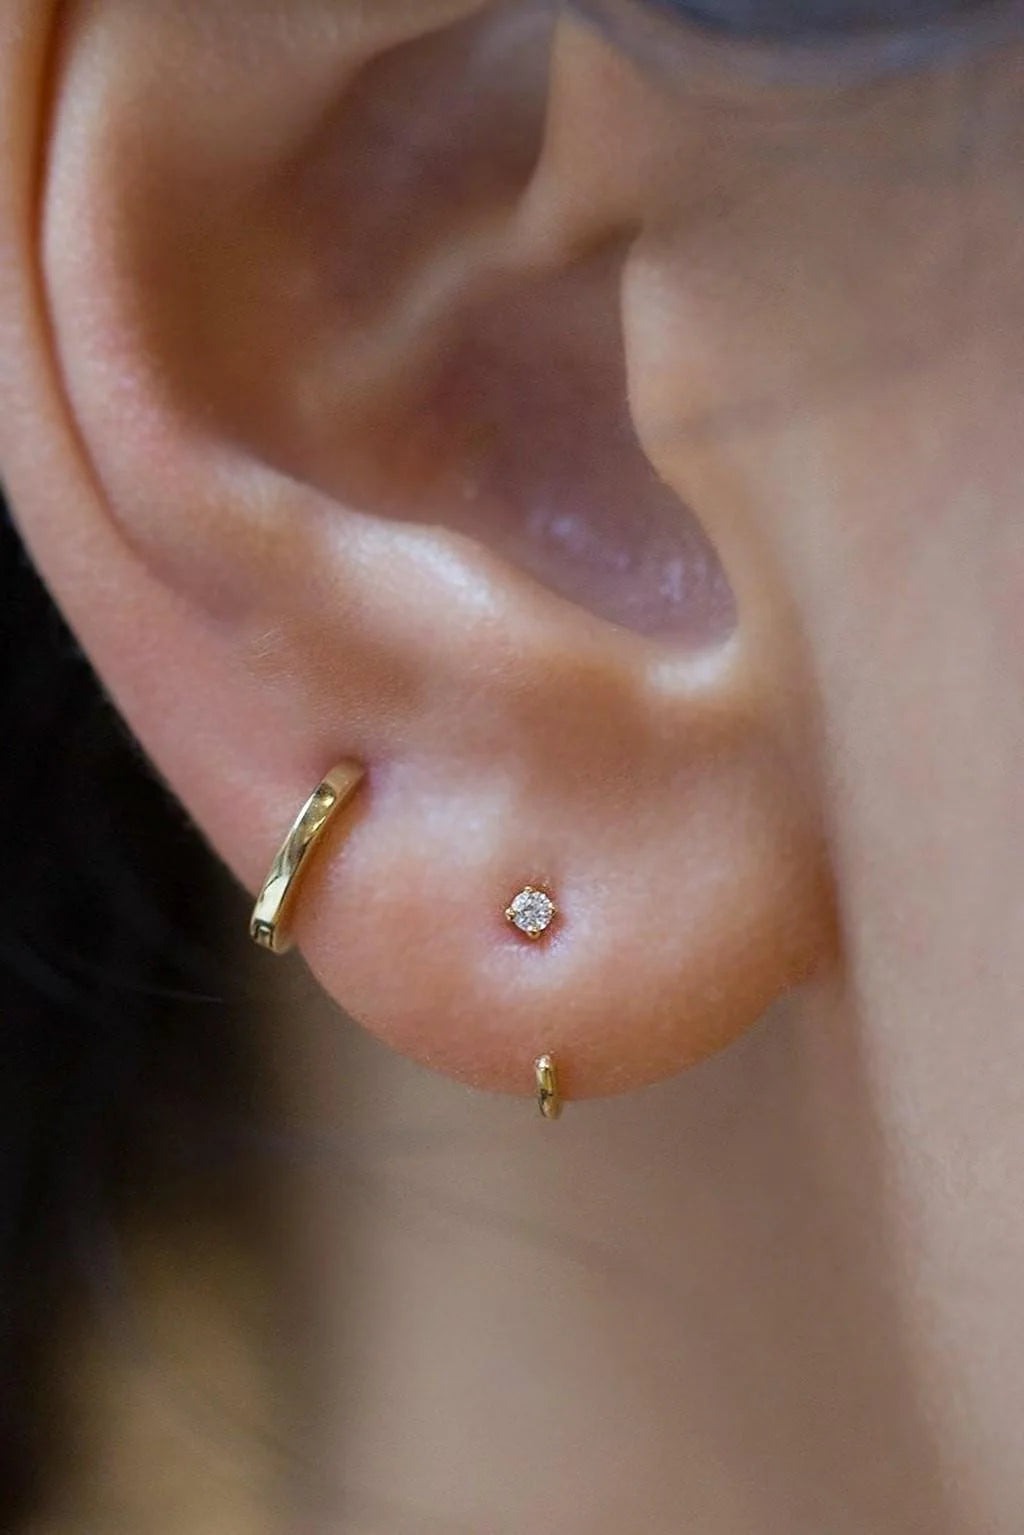 Sansoeurs 4-Claws diamond earring 18k gold huggie piercing 1.7mm